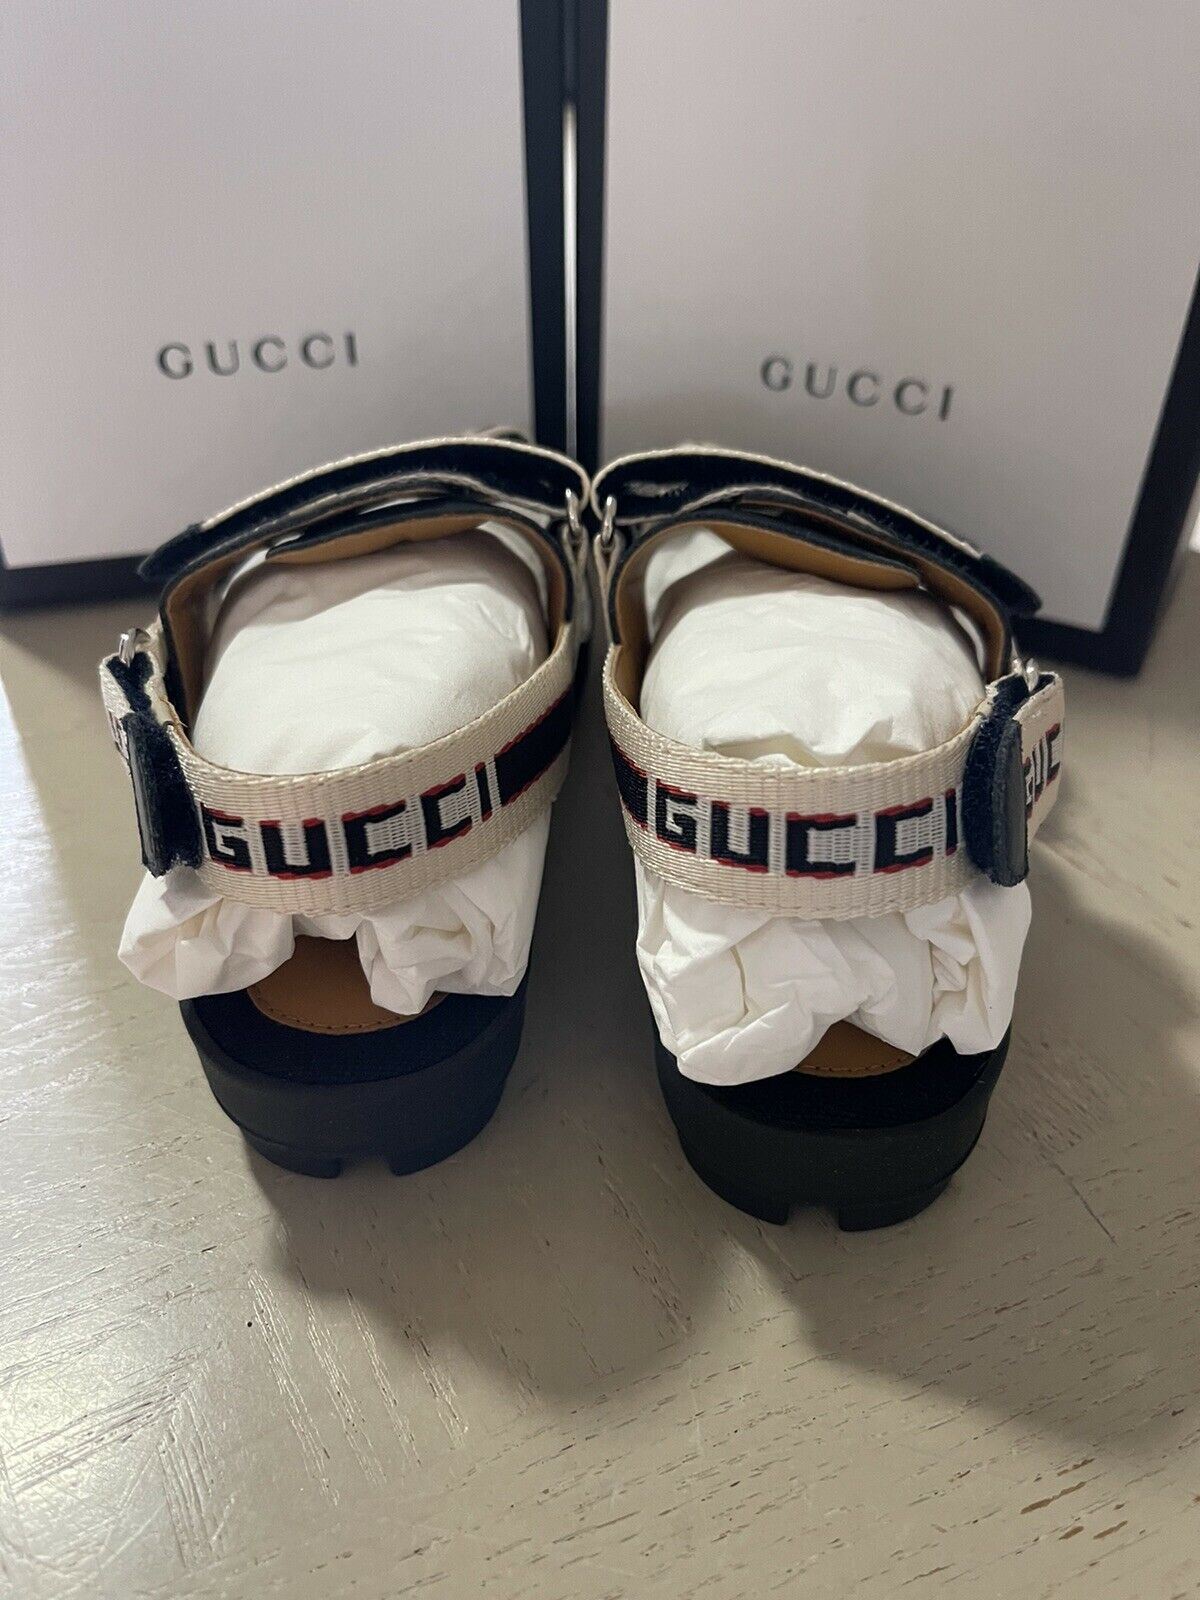 NIB Gucci Детские сандалии из парусины/кожи, черные/белые, размер 31/13, США, возраст 6,5 лет